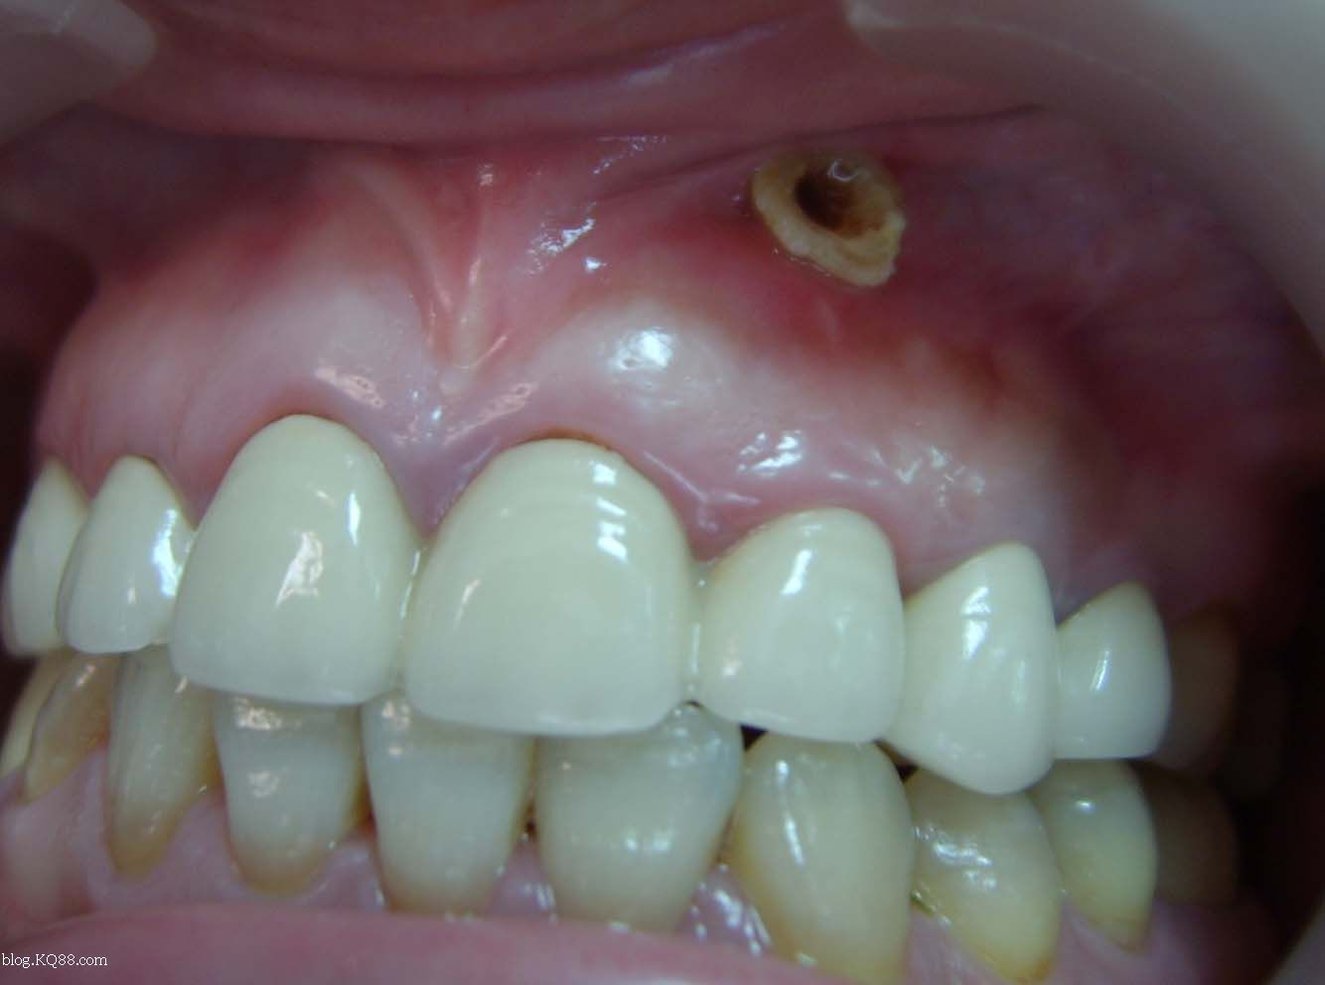 根尖囊肿生长很慢,多无自觉症状,由于患牙牙骺已坏死,牙体变色,呈深